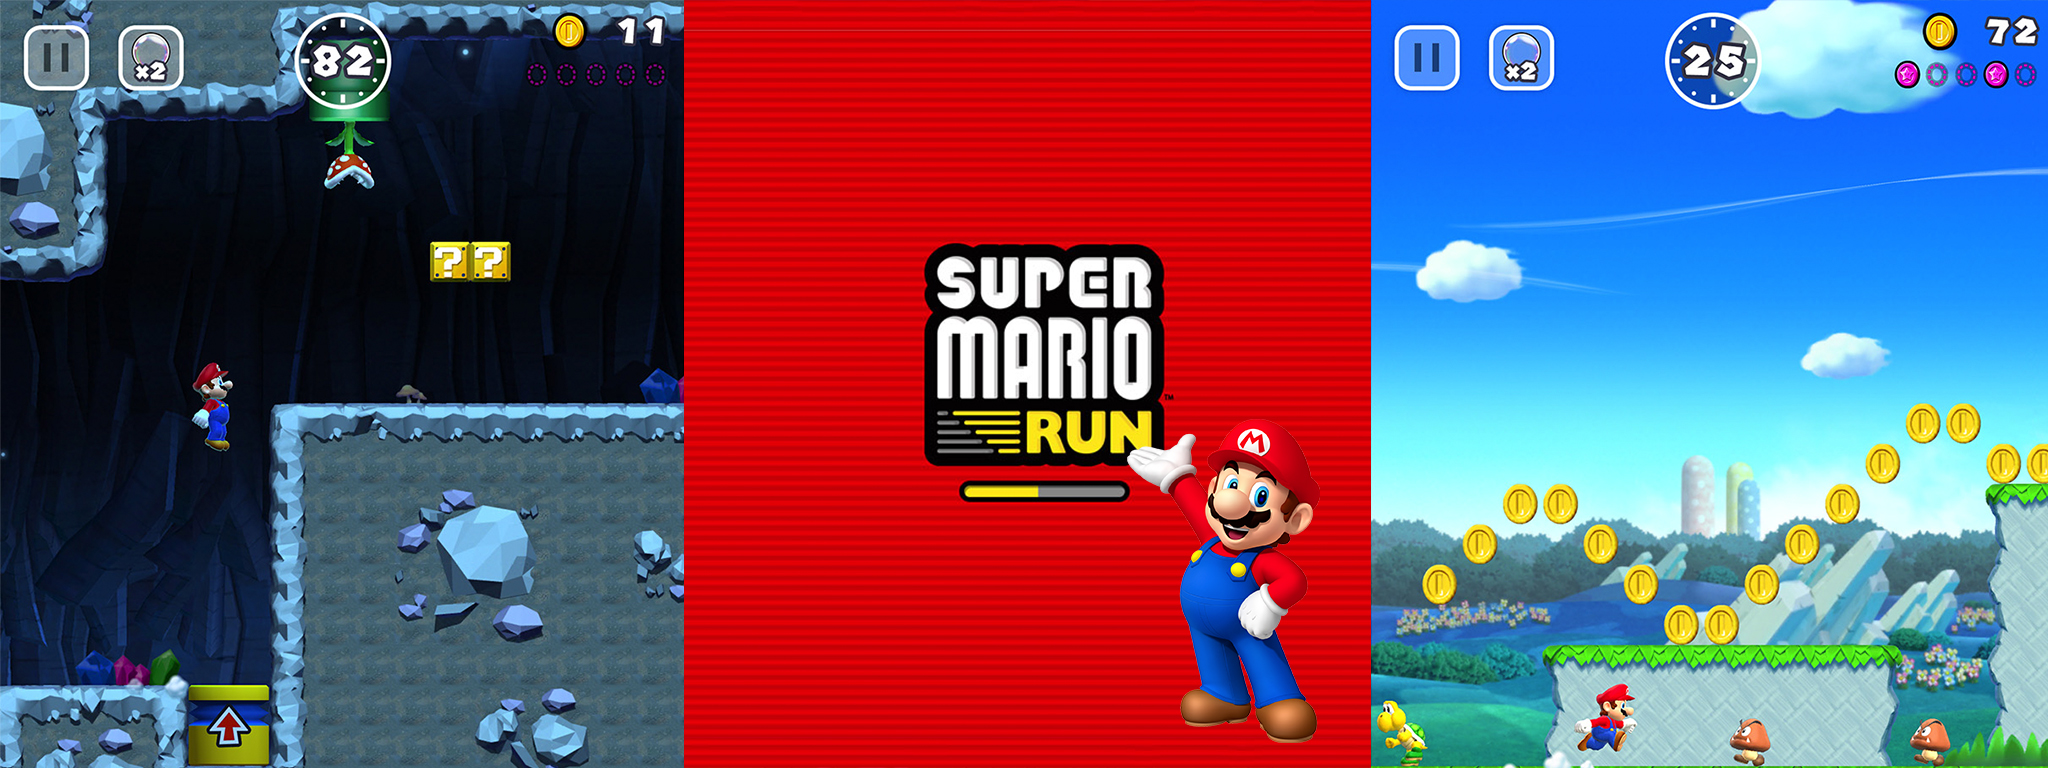 Super Mario Run đã có 200 triệu lượt tải về, nhưng lợi nhuận "chưa chấp nhận được"